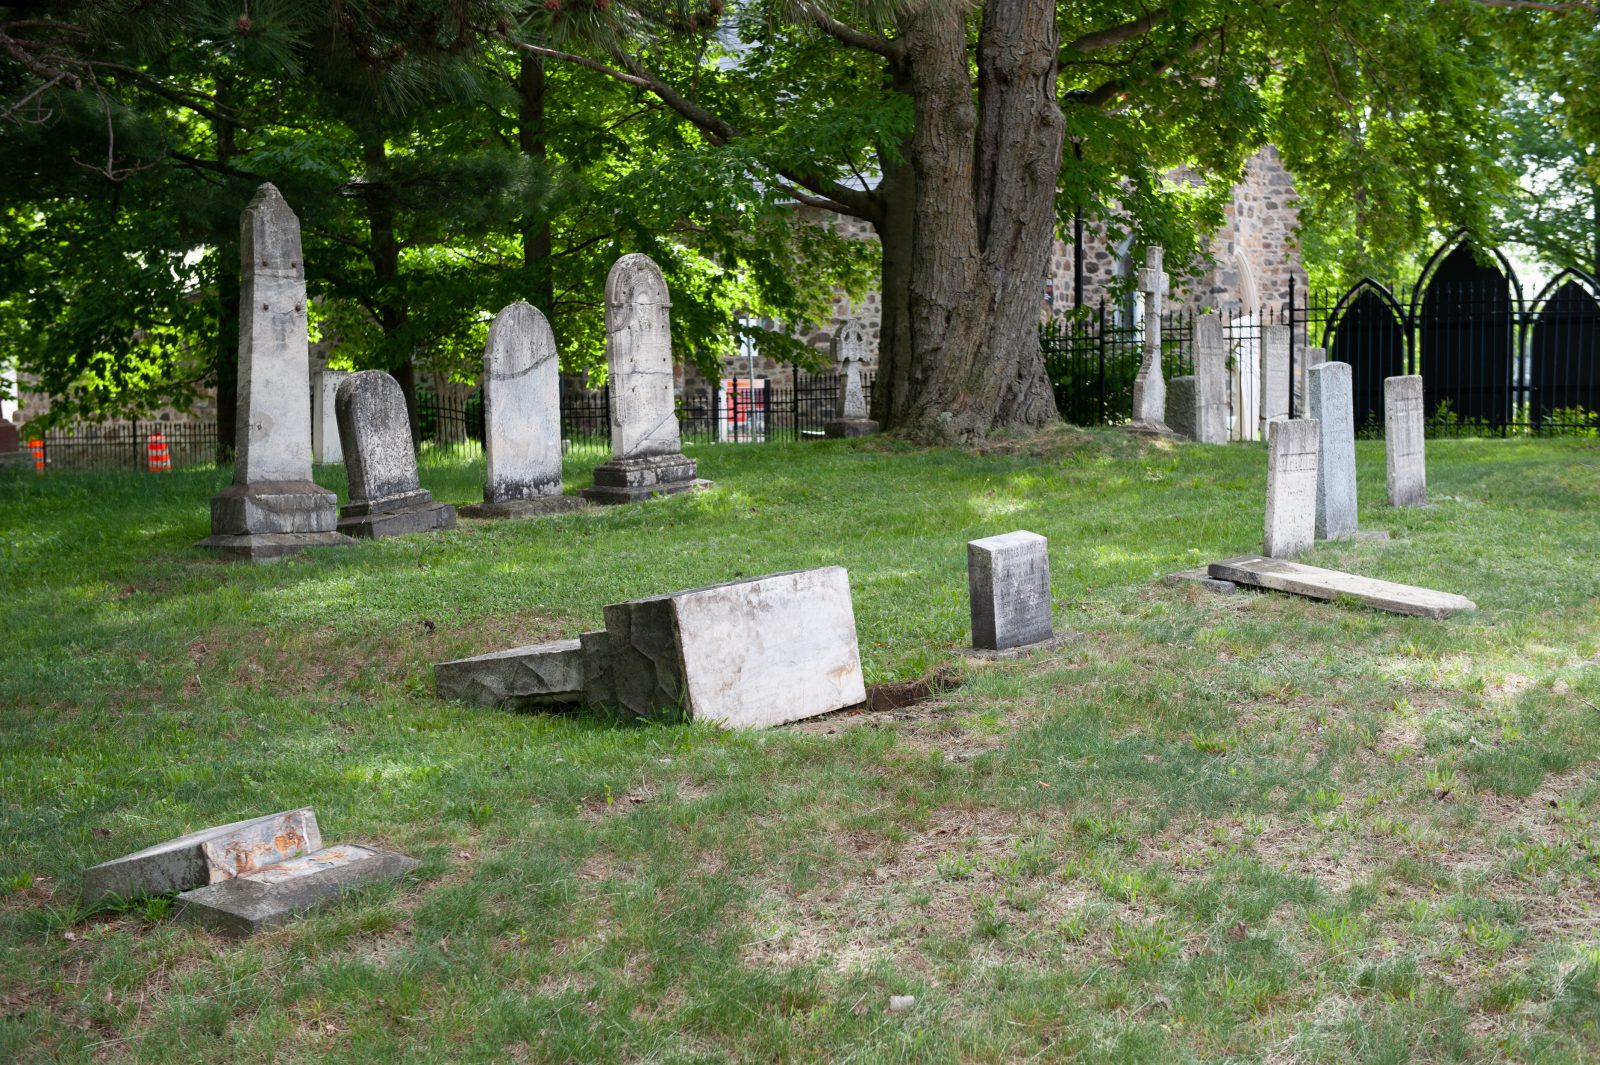 Le cimetière de l’église St. George est la cible de vandales